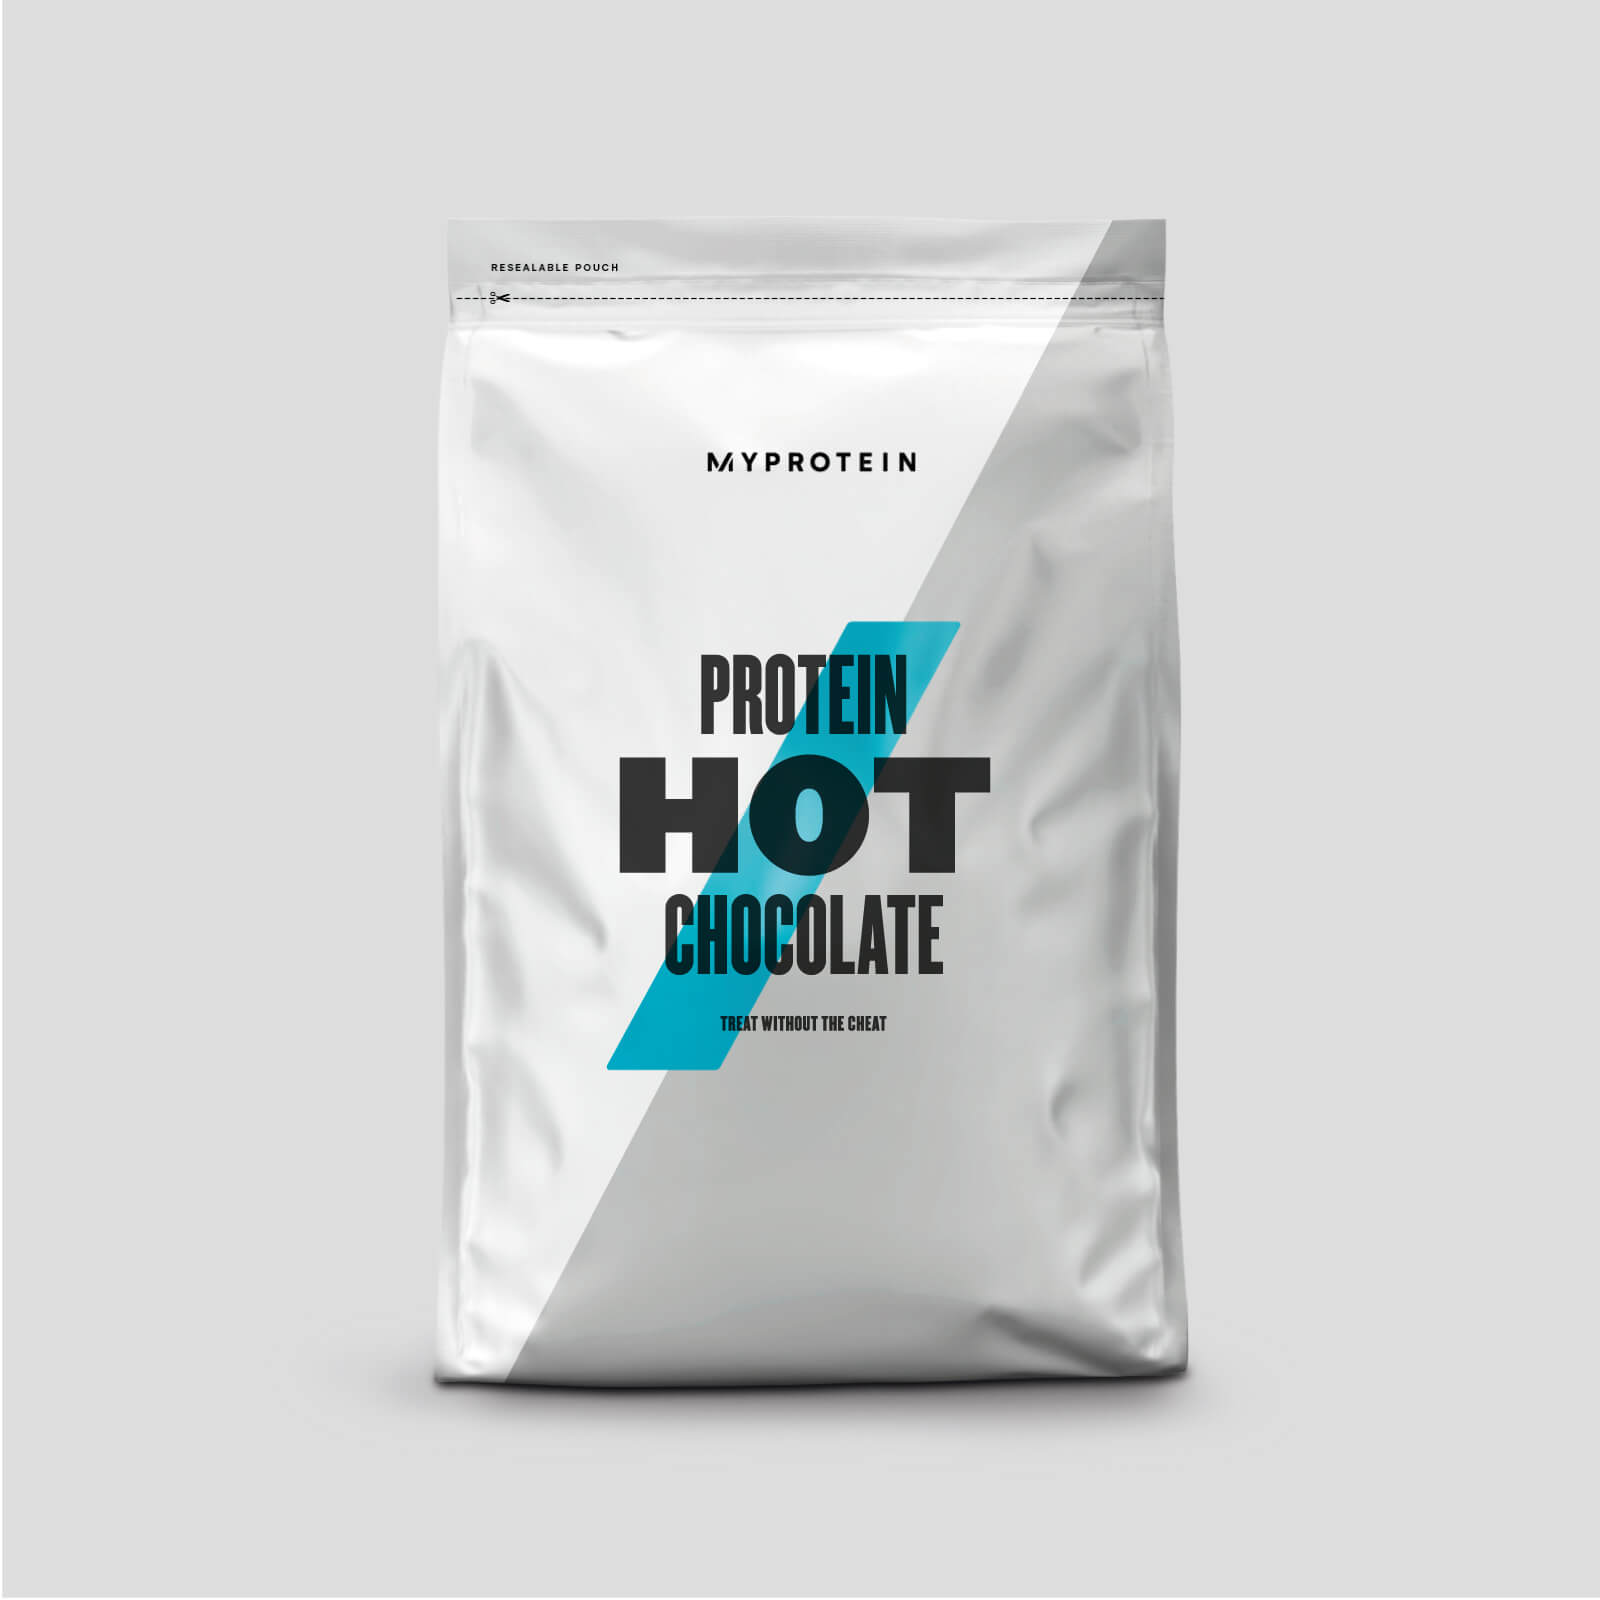 Myprotein Protein Hot Chocolate - 1kg - Chocolate